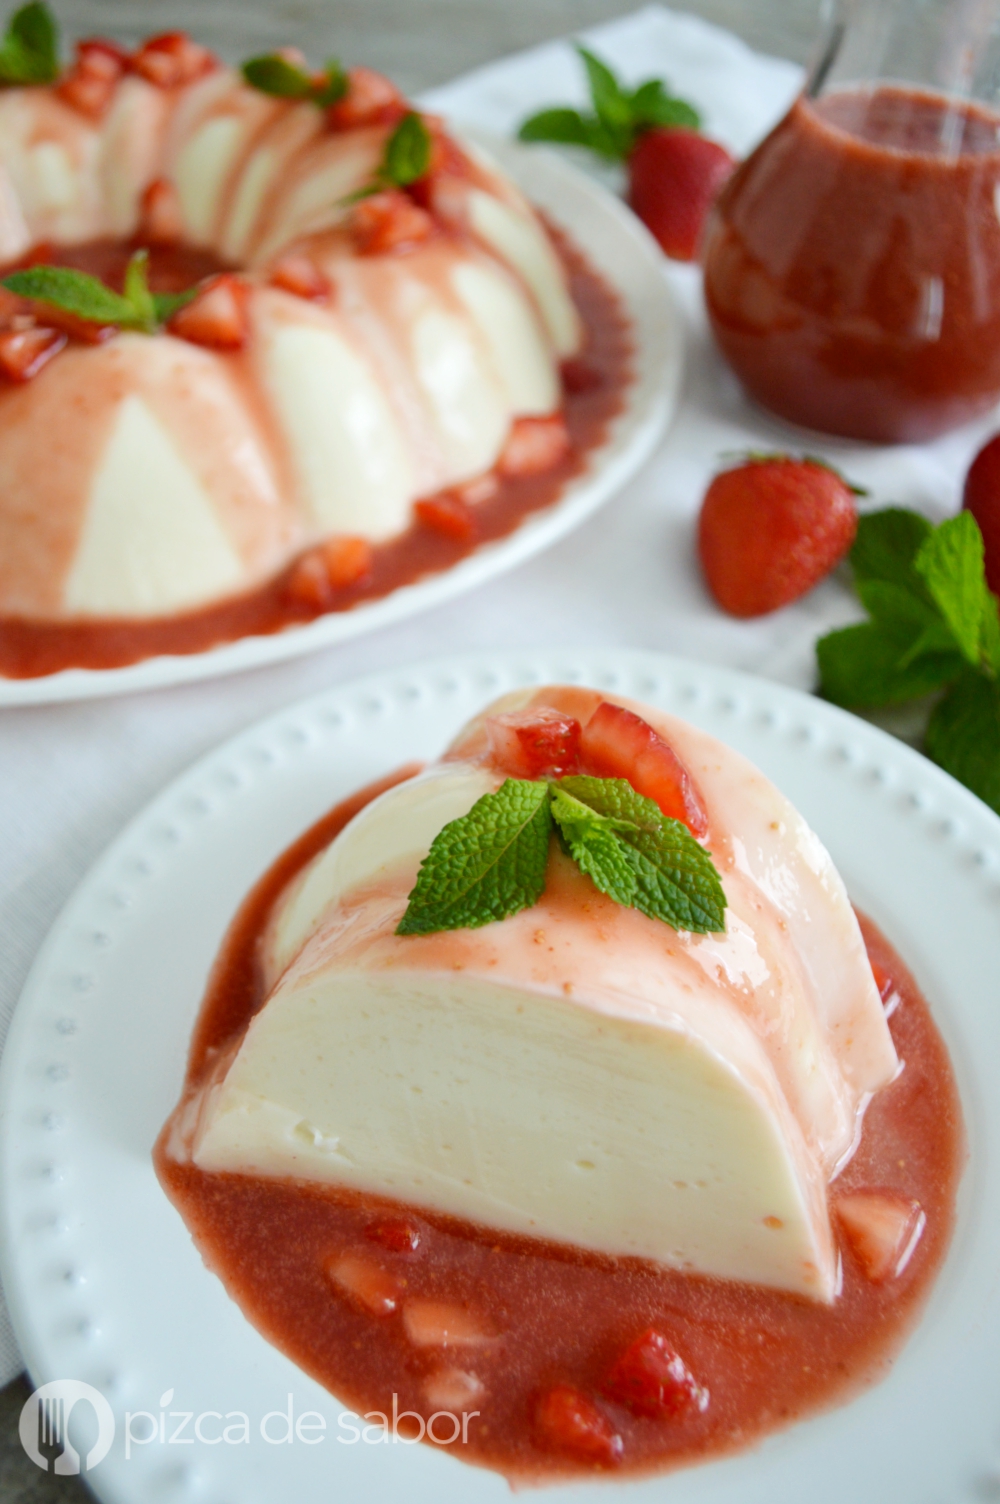 Gelatina de yogurt con salsa de fresa - Pizca de Sabor